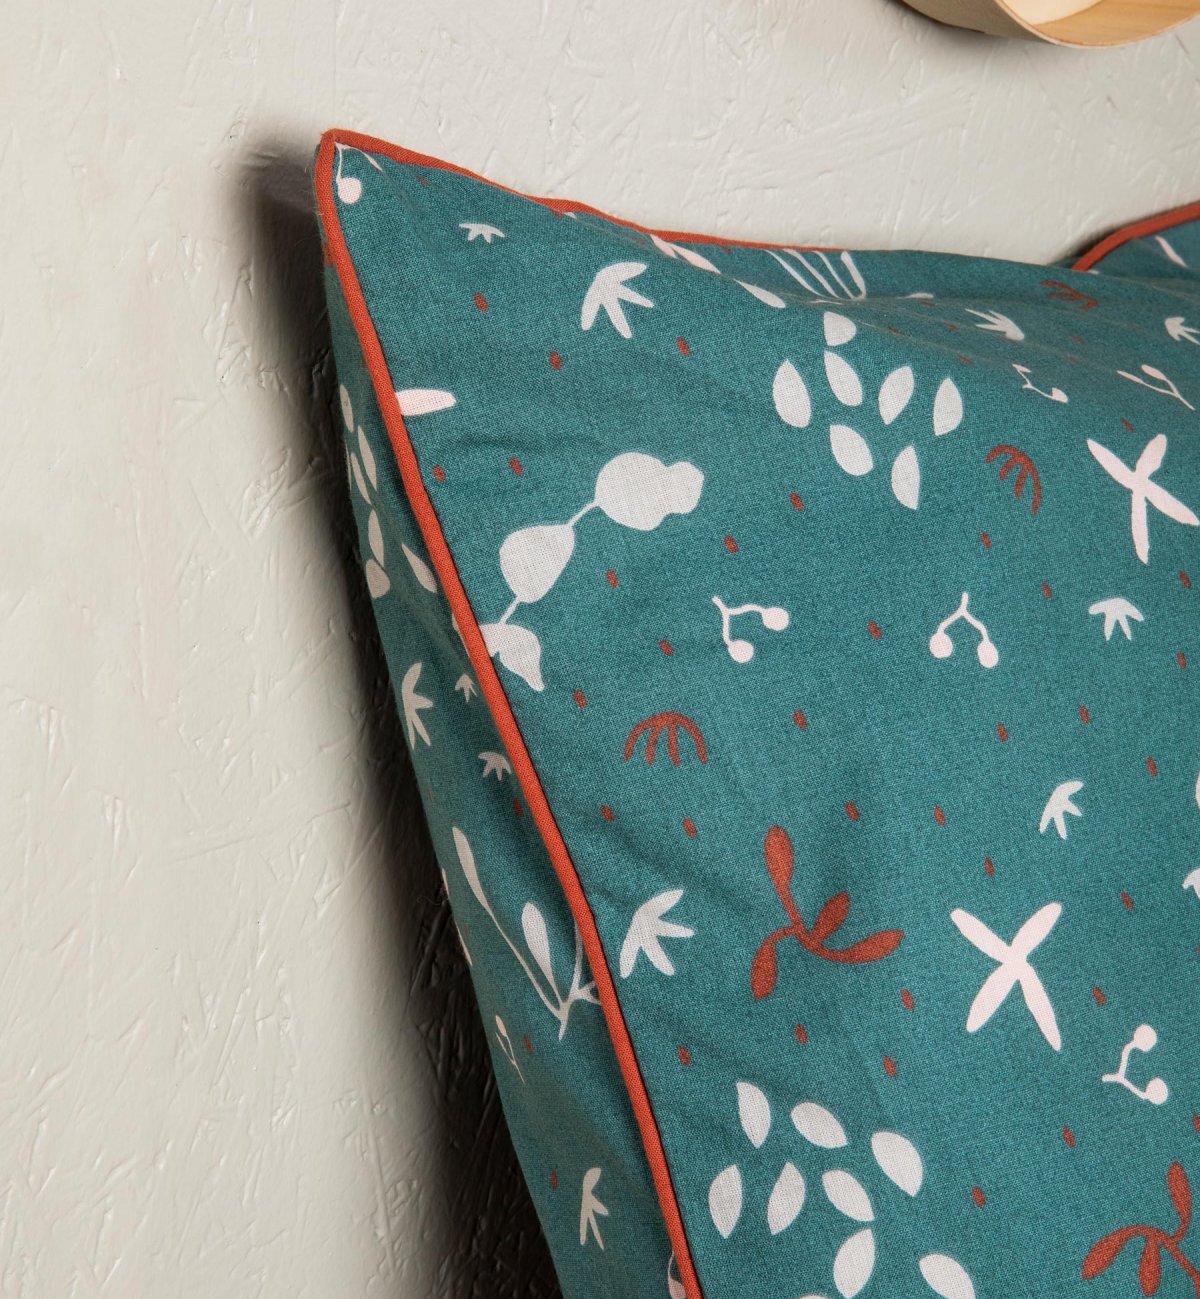 Funda de almohada de Algodón Orgánico con diseño Ikebana